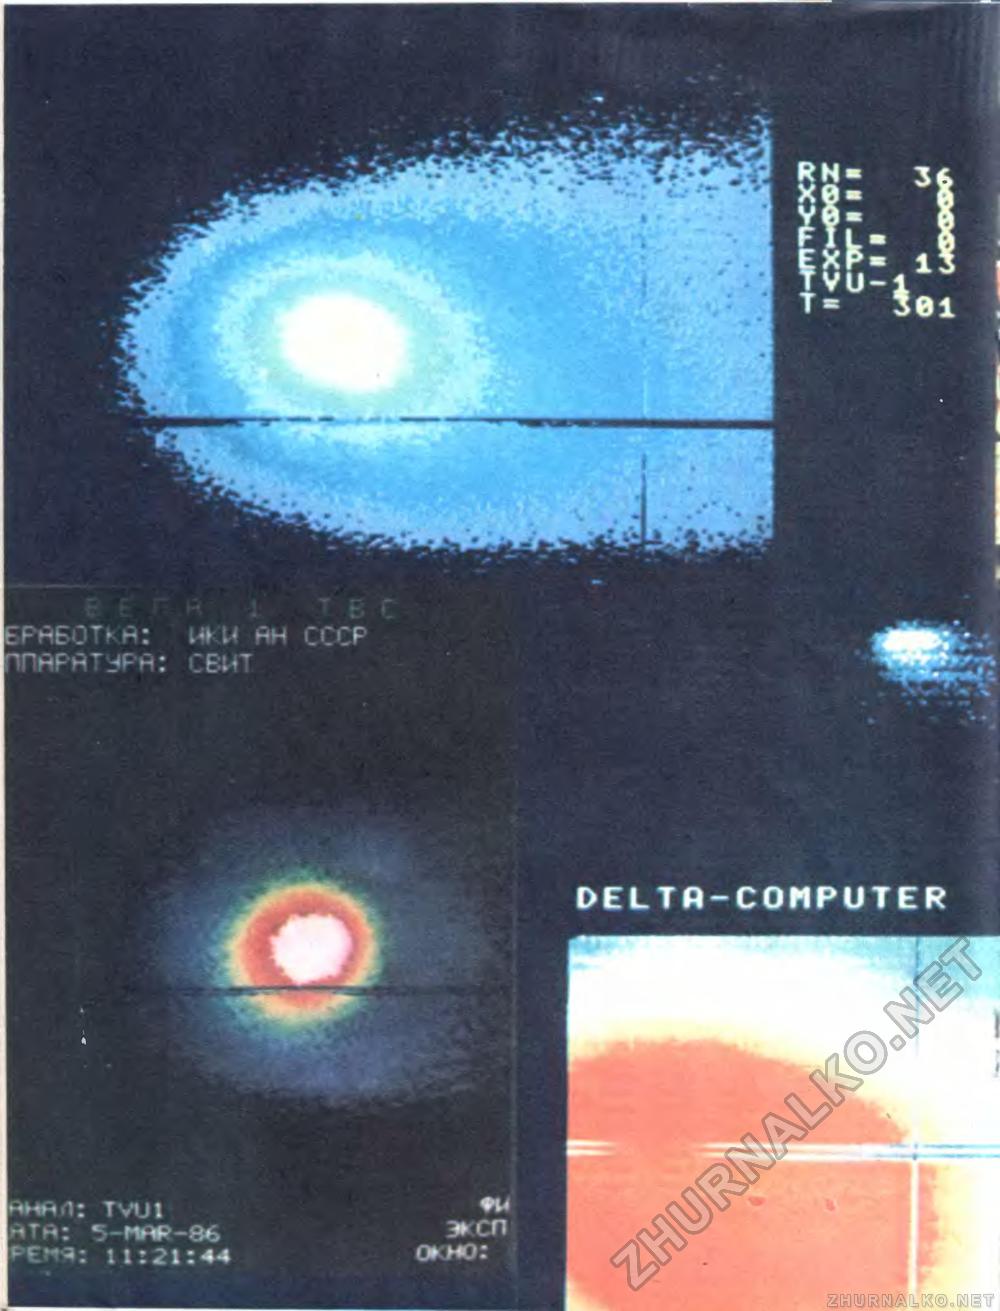  -  1986-04,  35